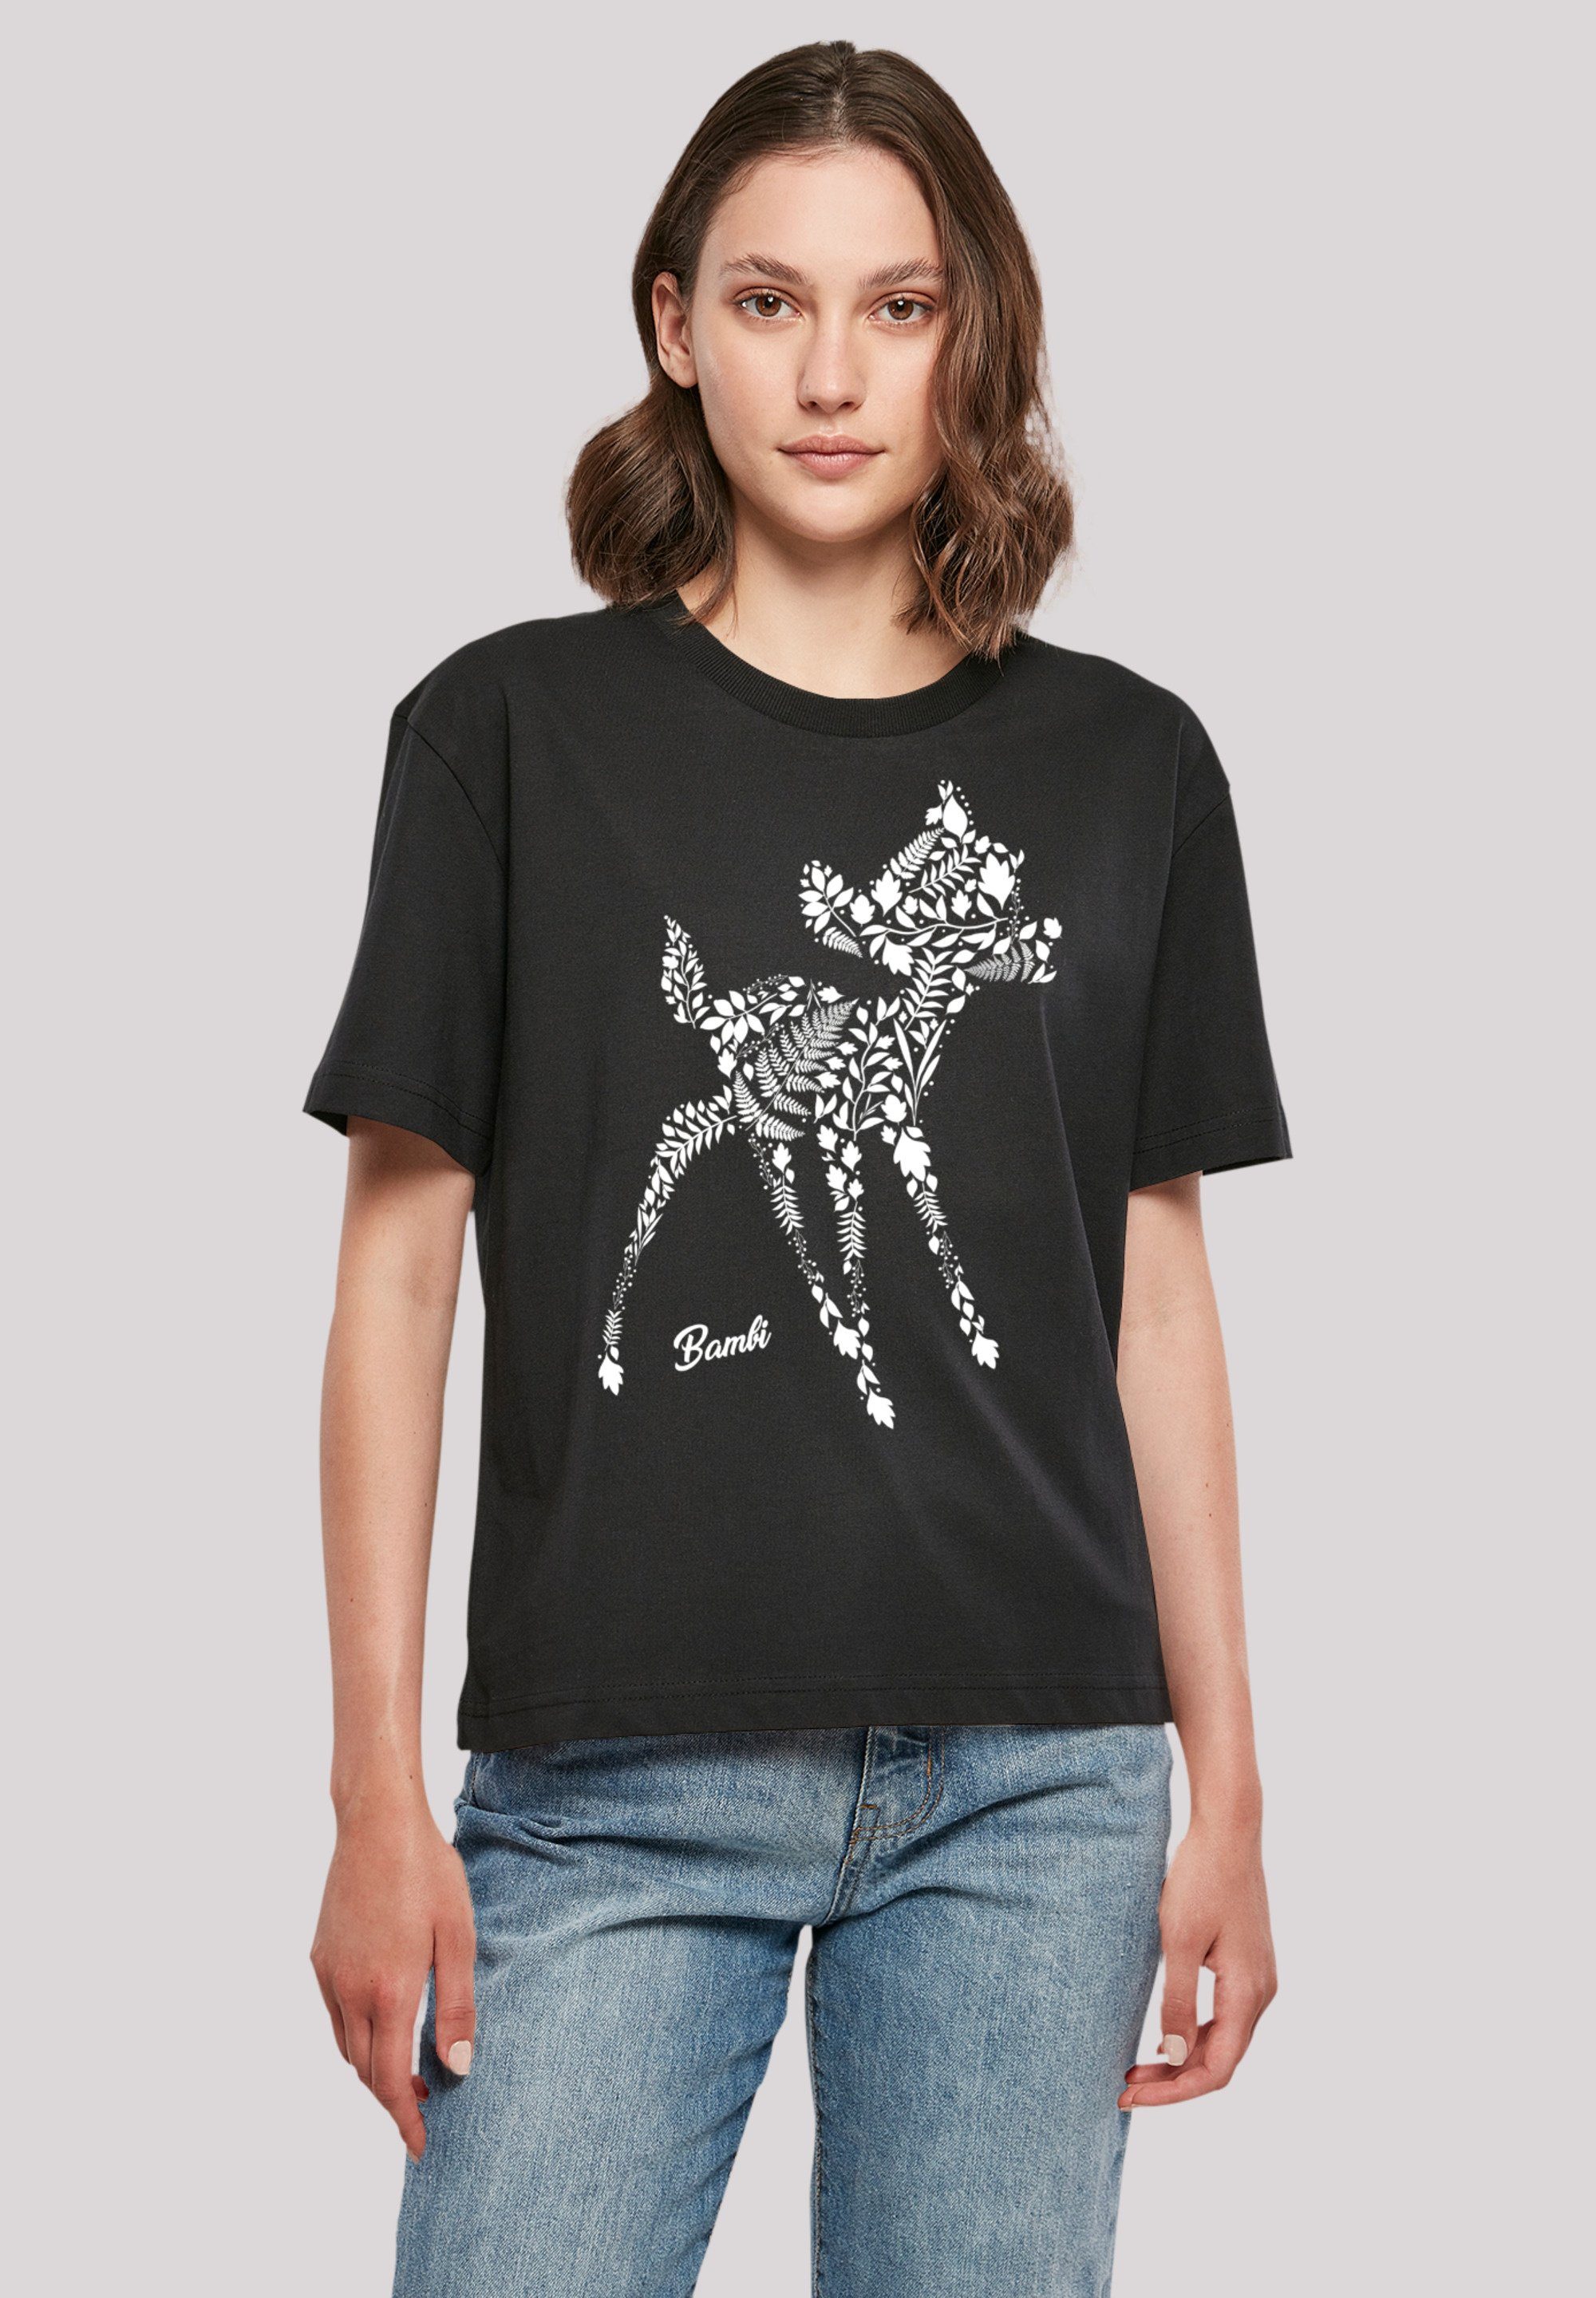 kombinierbar Komfortabel F4NT4STIC Botanica Bambi vielseitig Premium Qualität, T-Shirt und Disney